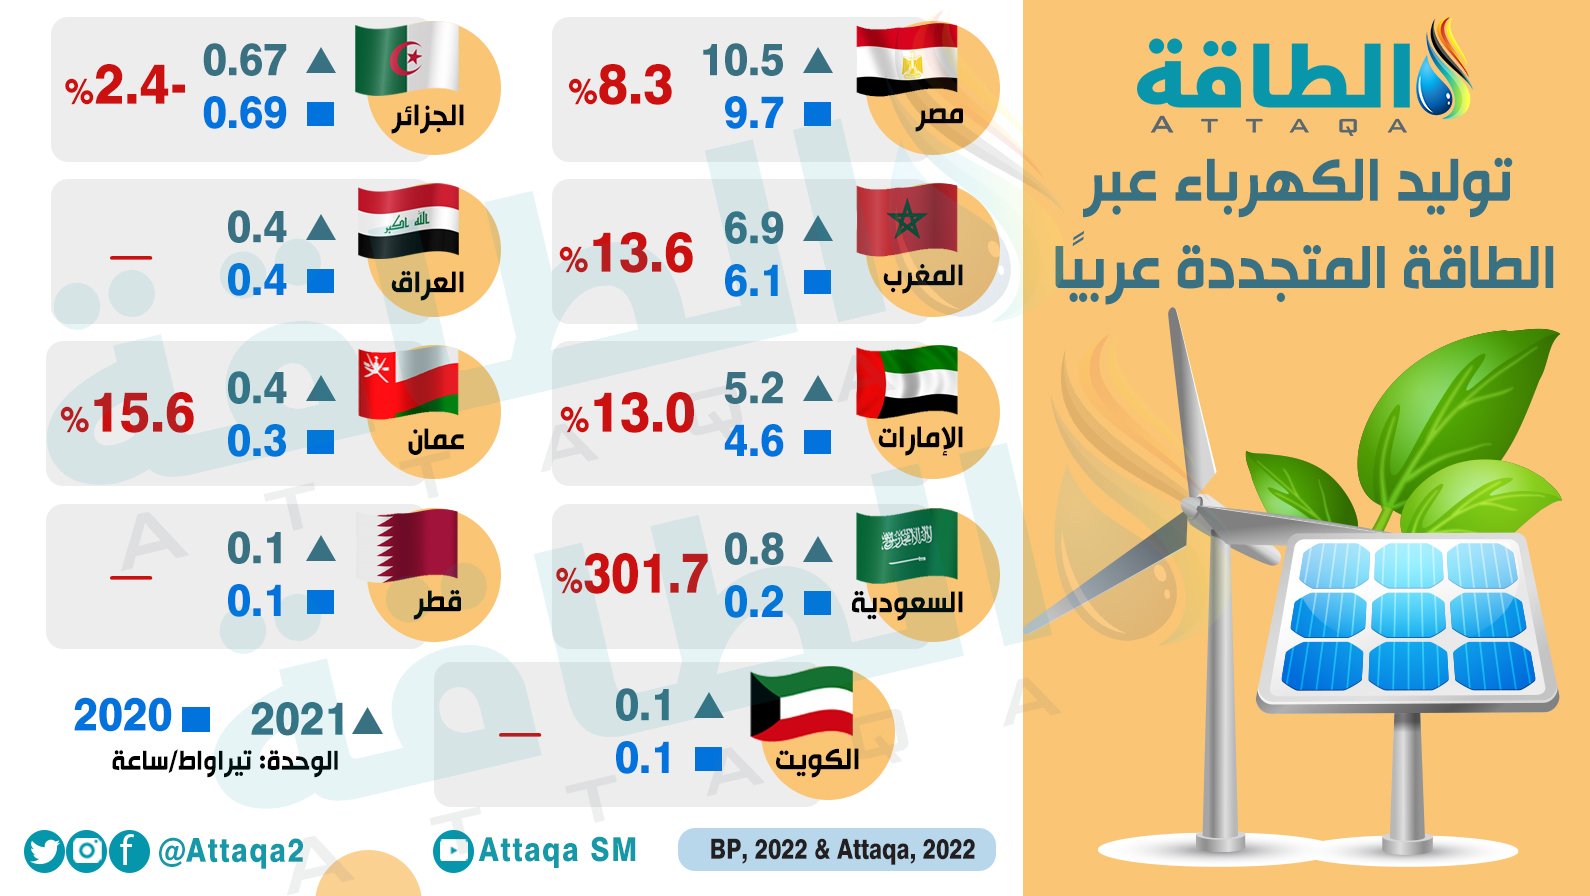 أكبر الدول العربية توليدًا للكهرباء